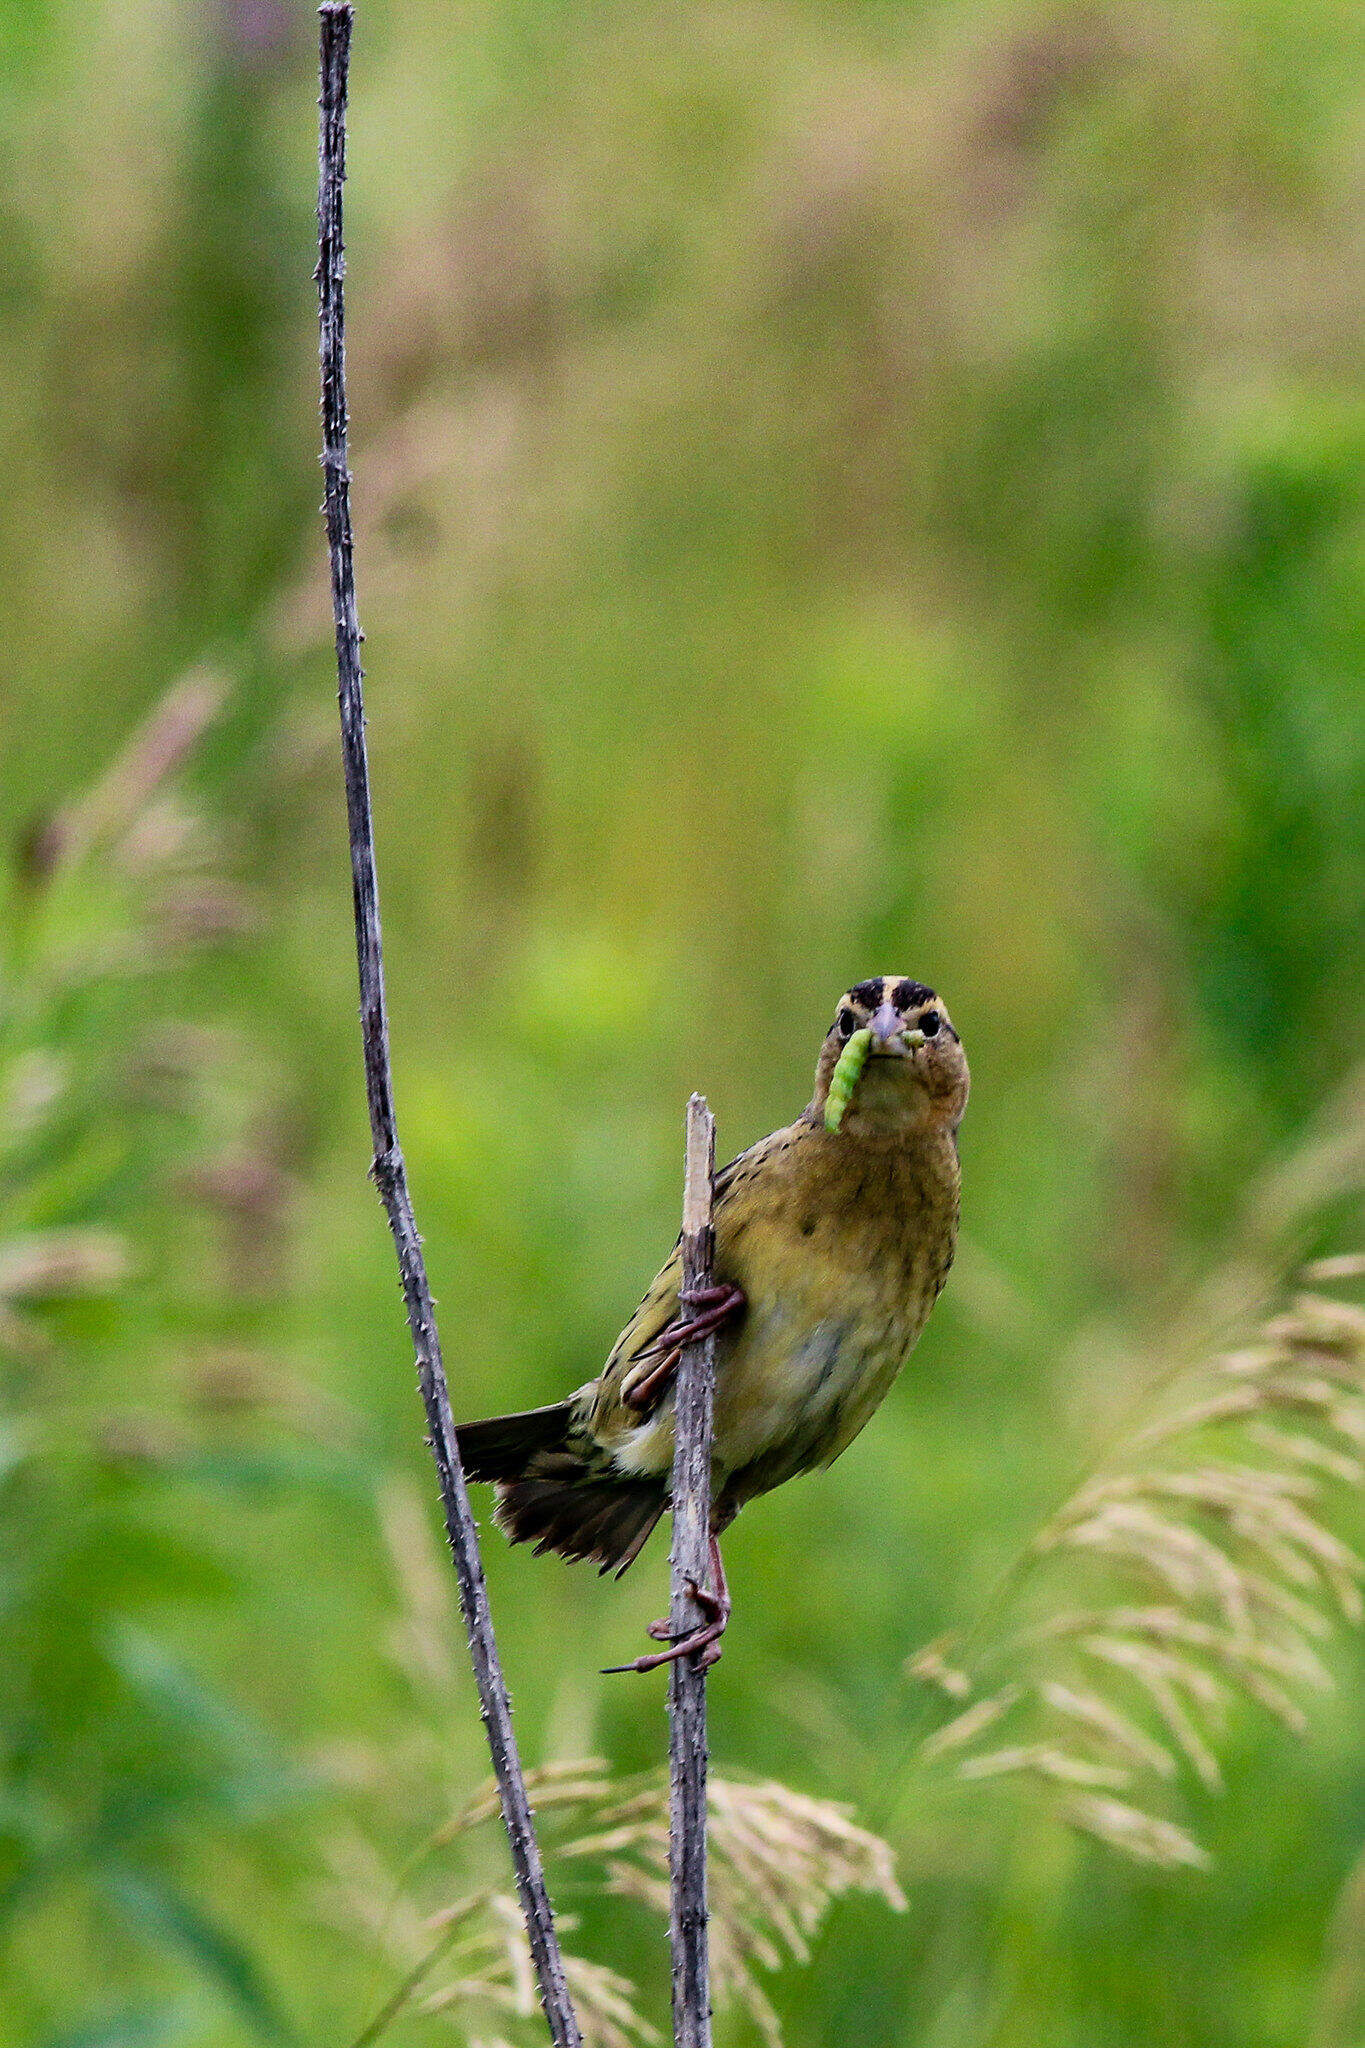 A Savannah Sparrow holds a green caterpillar in its beak.